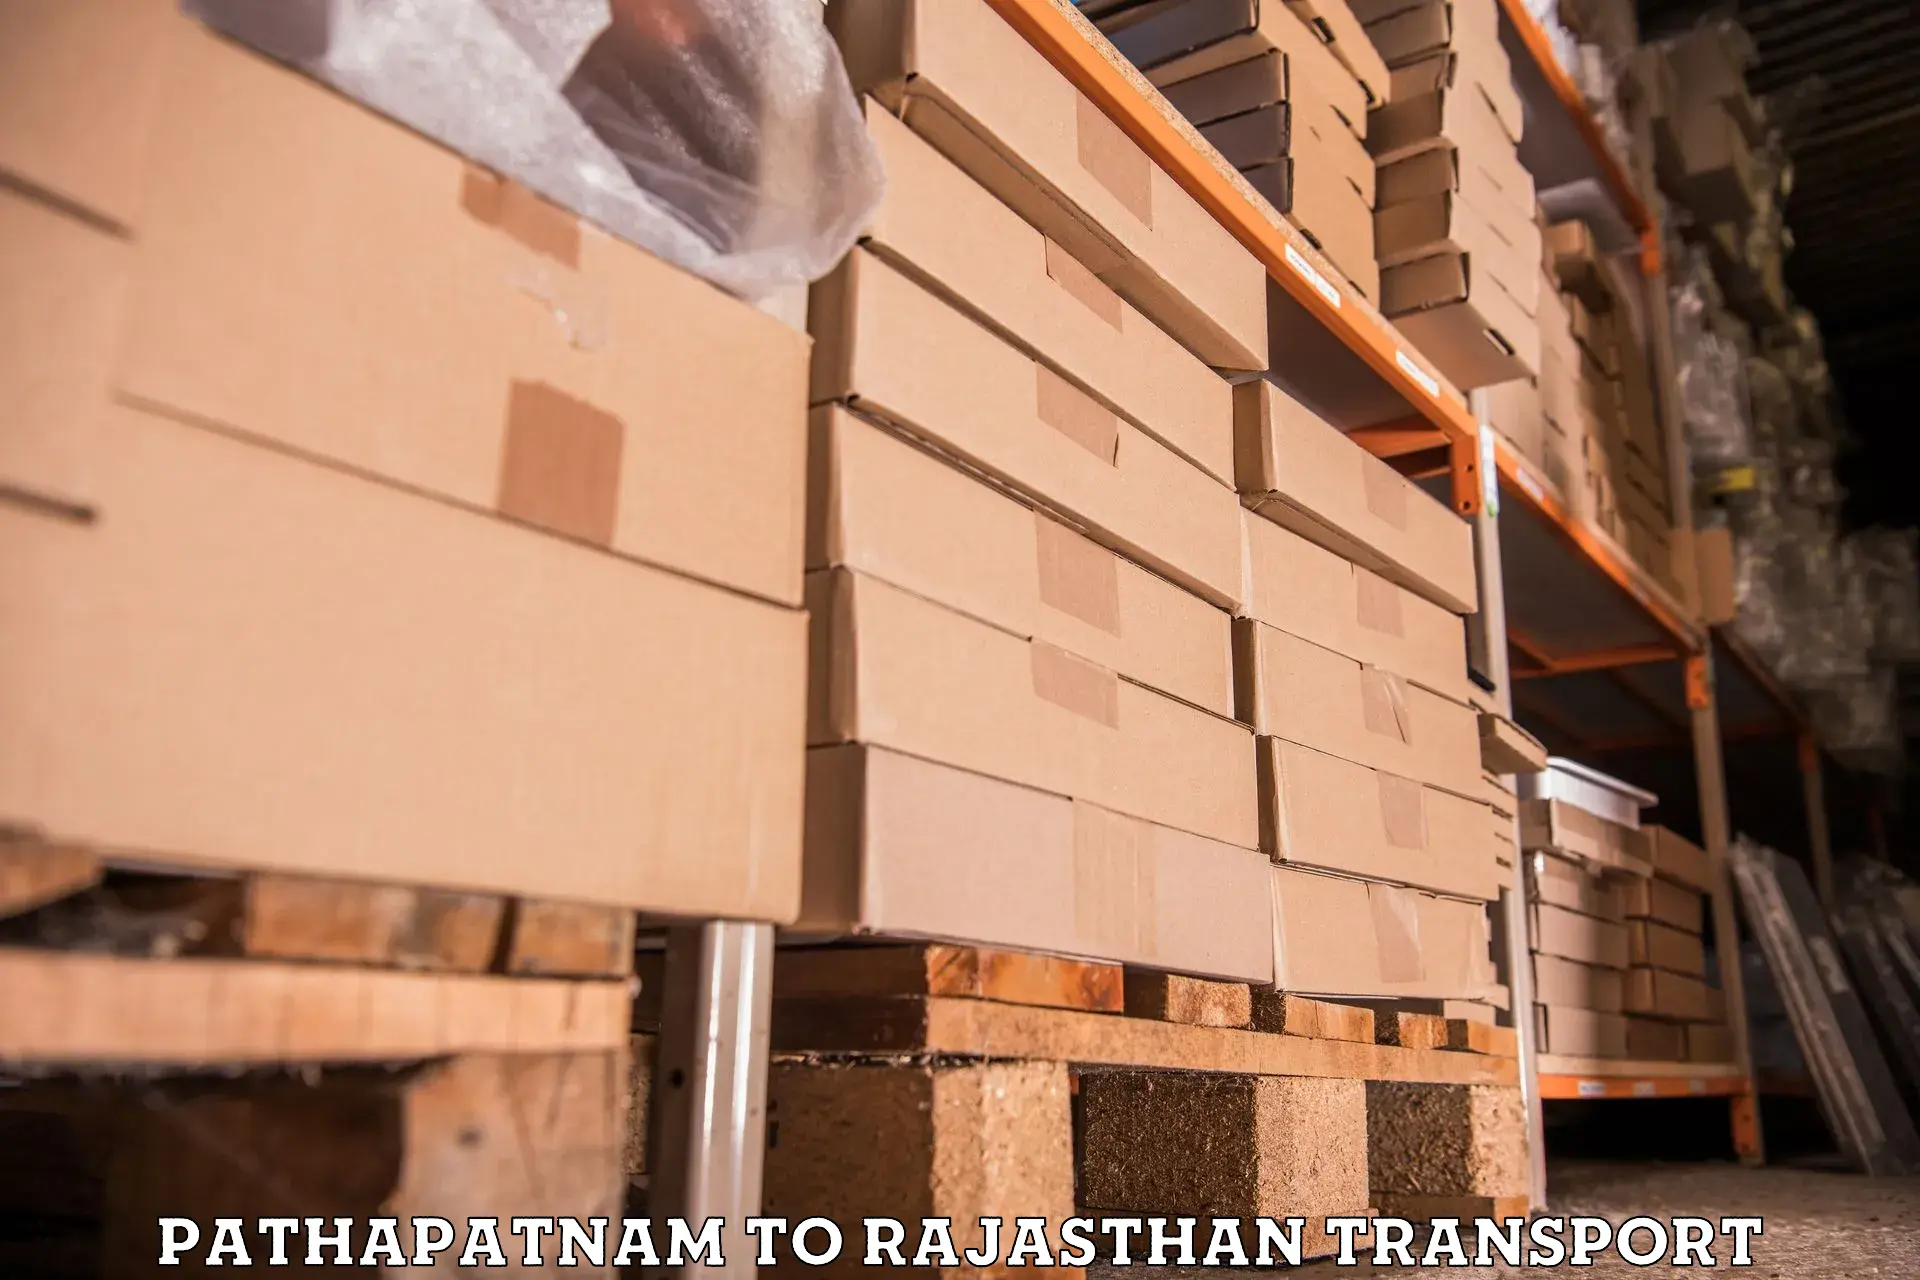 Furniture transport service Pathapatnam to Rajgarh Rajasthan